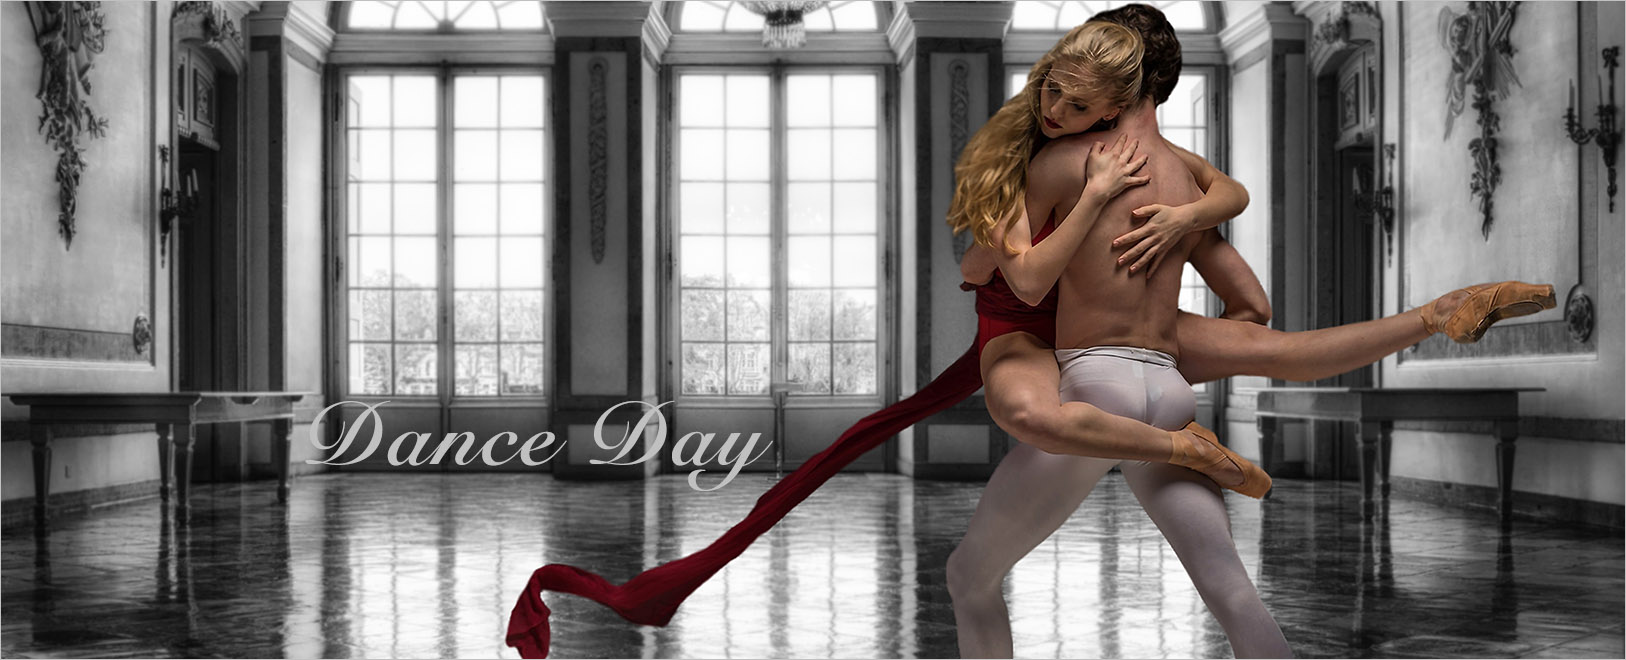 Dance Day